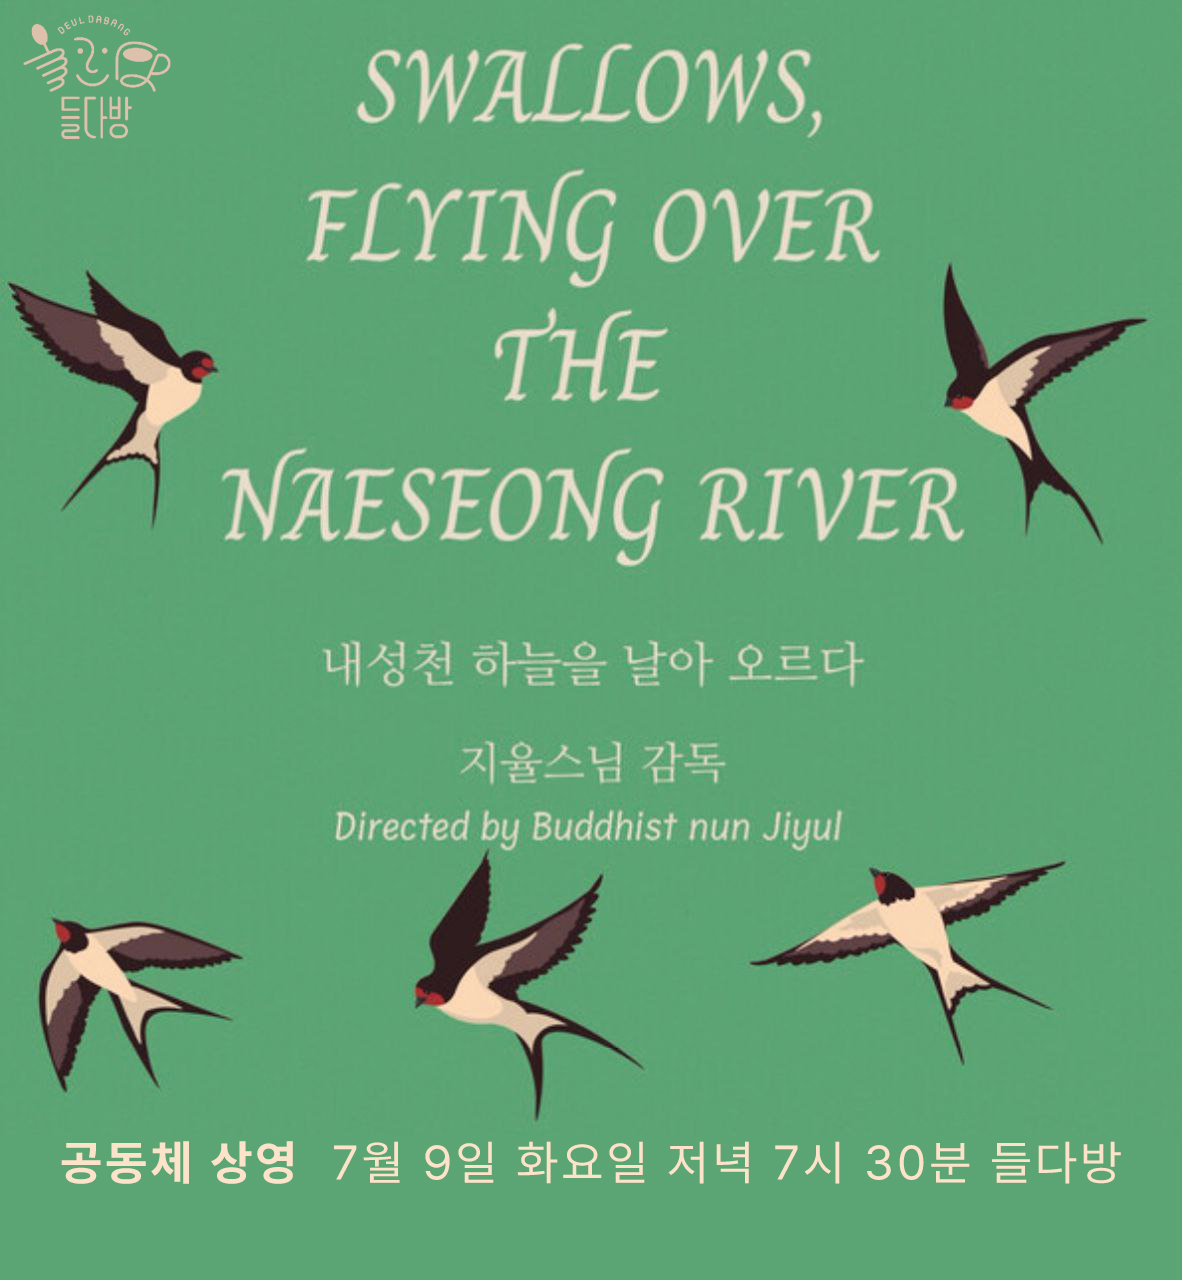 영화 상영 포스터. 제비들이 날아다니는 그림을 배경으로 'Swallows, flying over the Naeseong river. 내성천 하늘을 날아 오르다. 지율스님 감독. Directed by Buddhist nun Jiyul. 공동체 상영. 7월 9일 화요일 저녁 7시 30분 들다방'이라는 문구가 적혀있다.